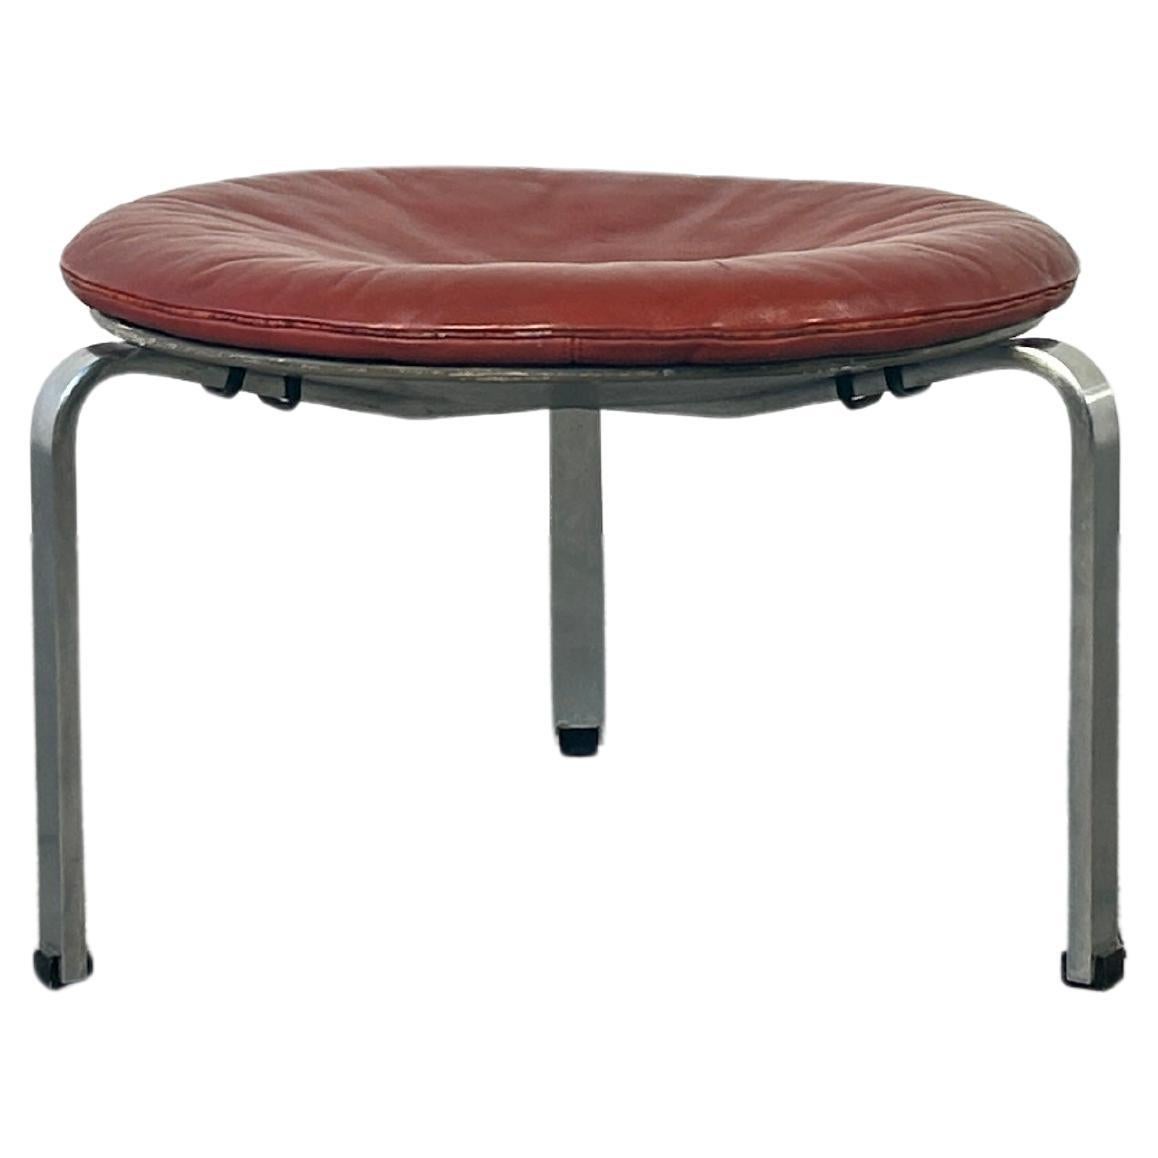 PK33 stool designed by Poul Khaerholm for Kold Christensen, Denmark